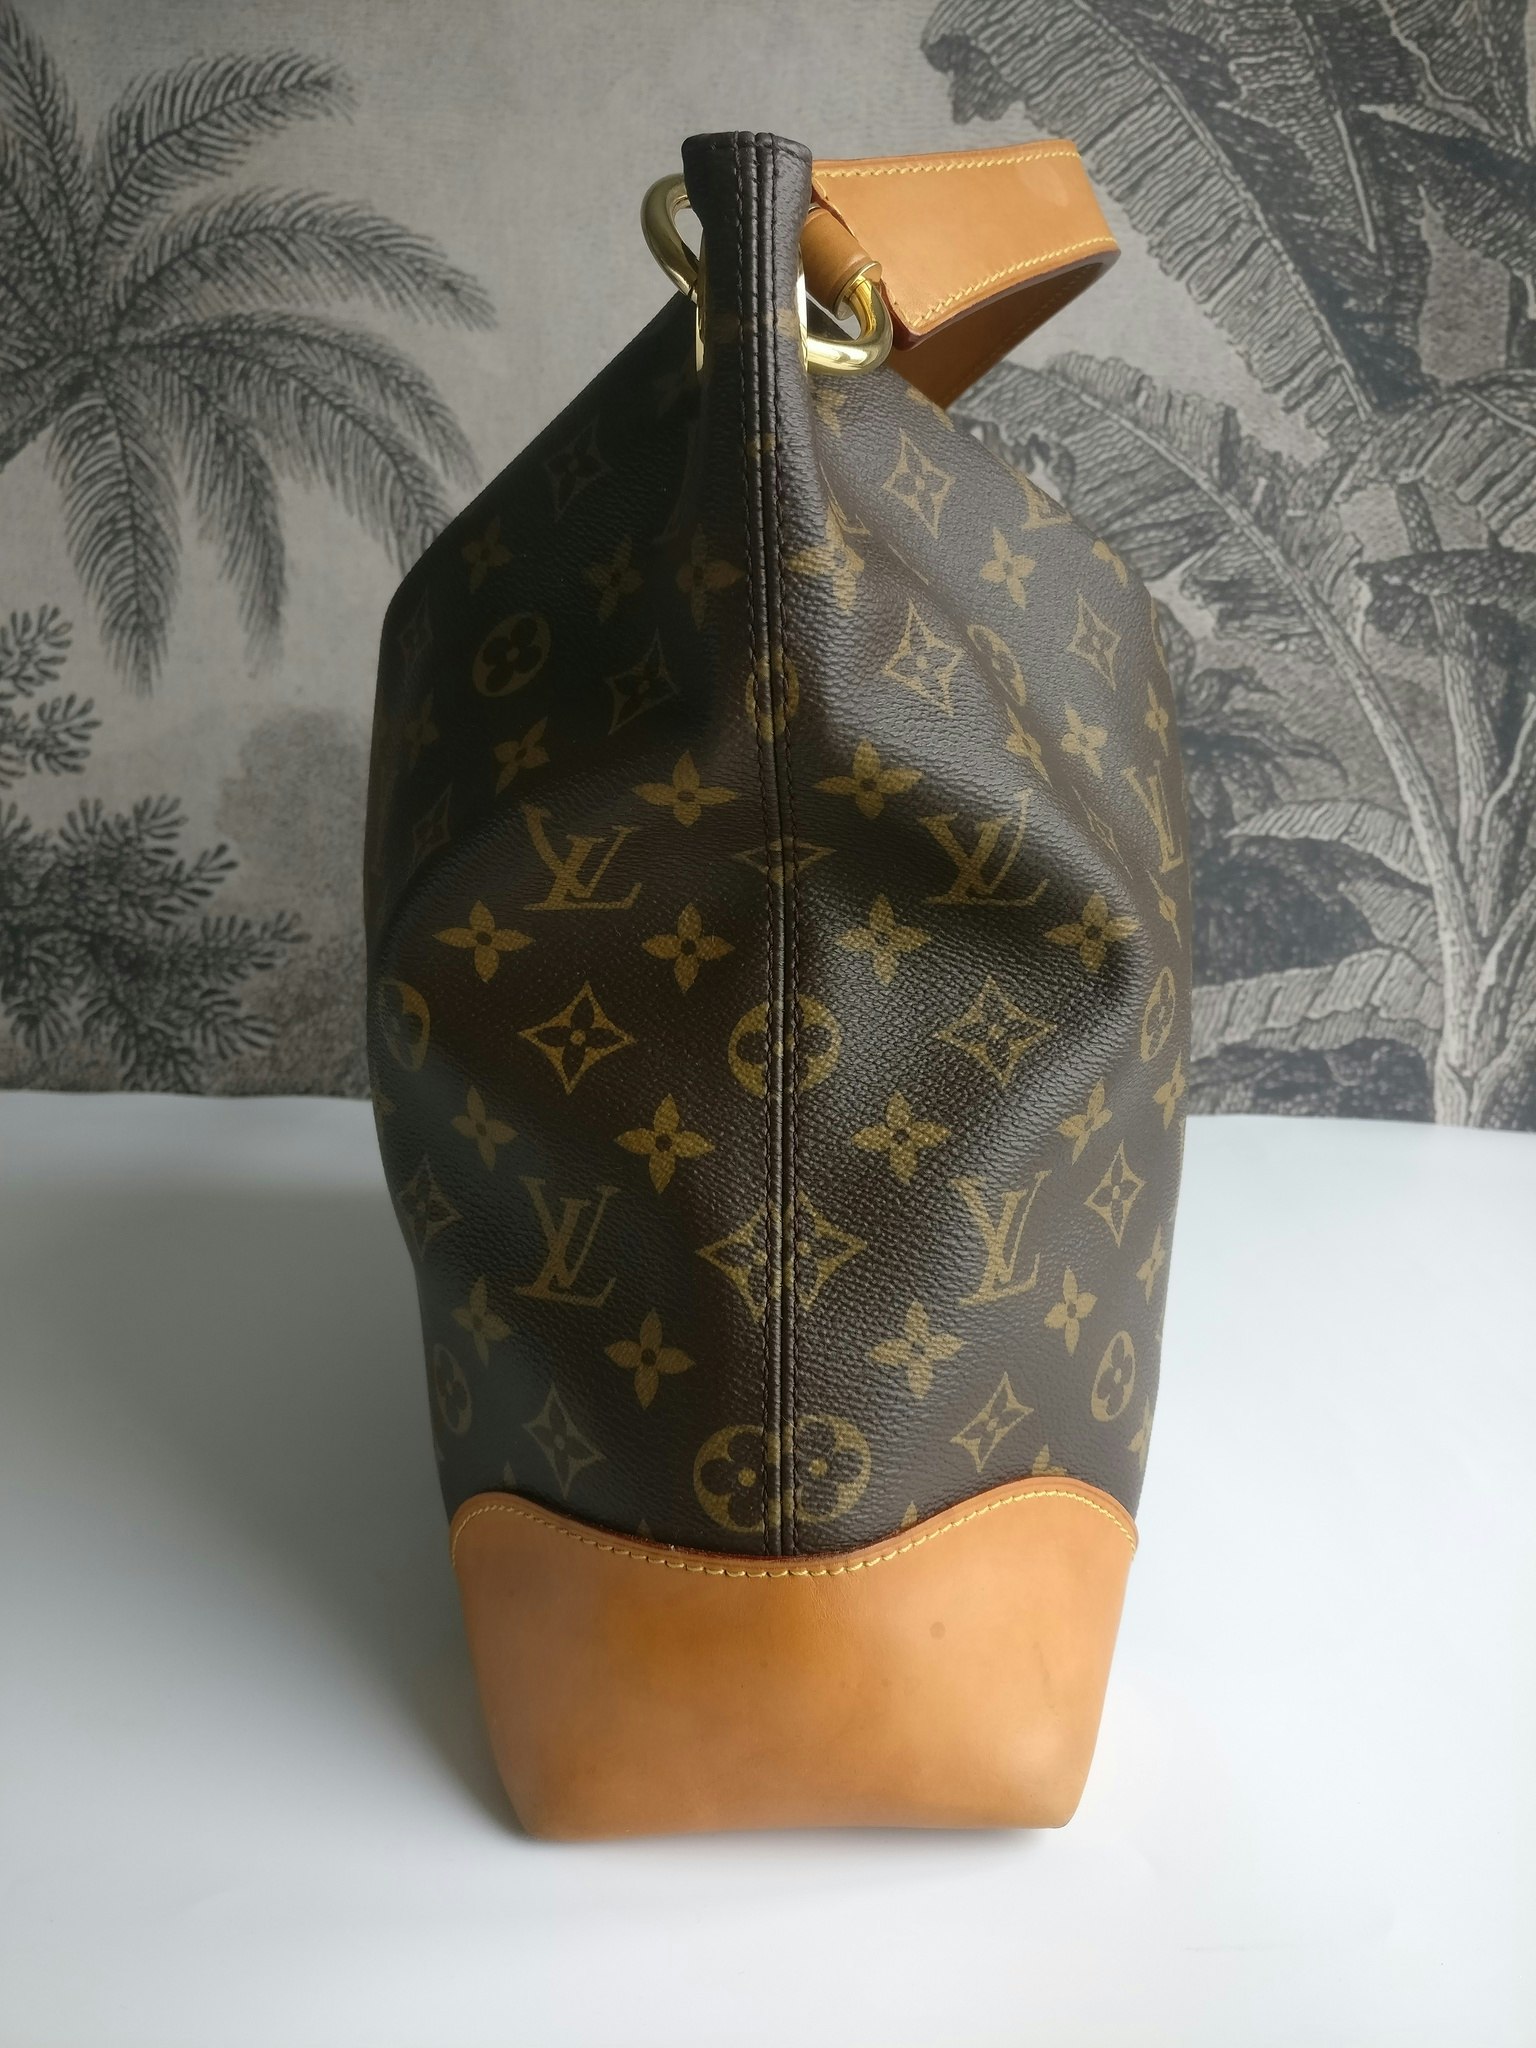 Authentic Louis Vuitton Berri Tote PM Brown Monogram Canvas Handbag  Designer Bag